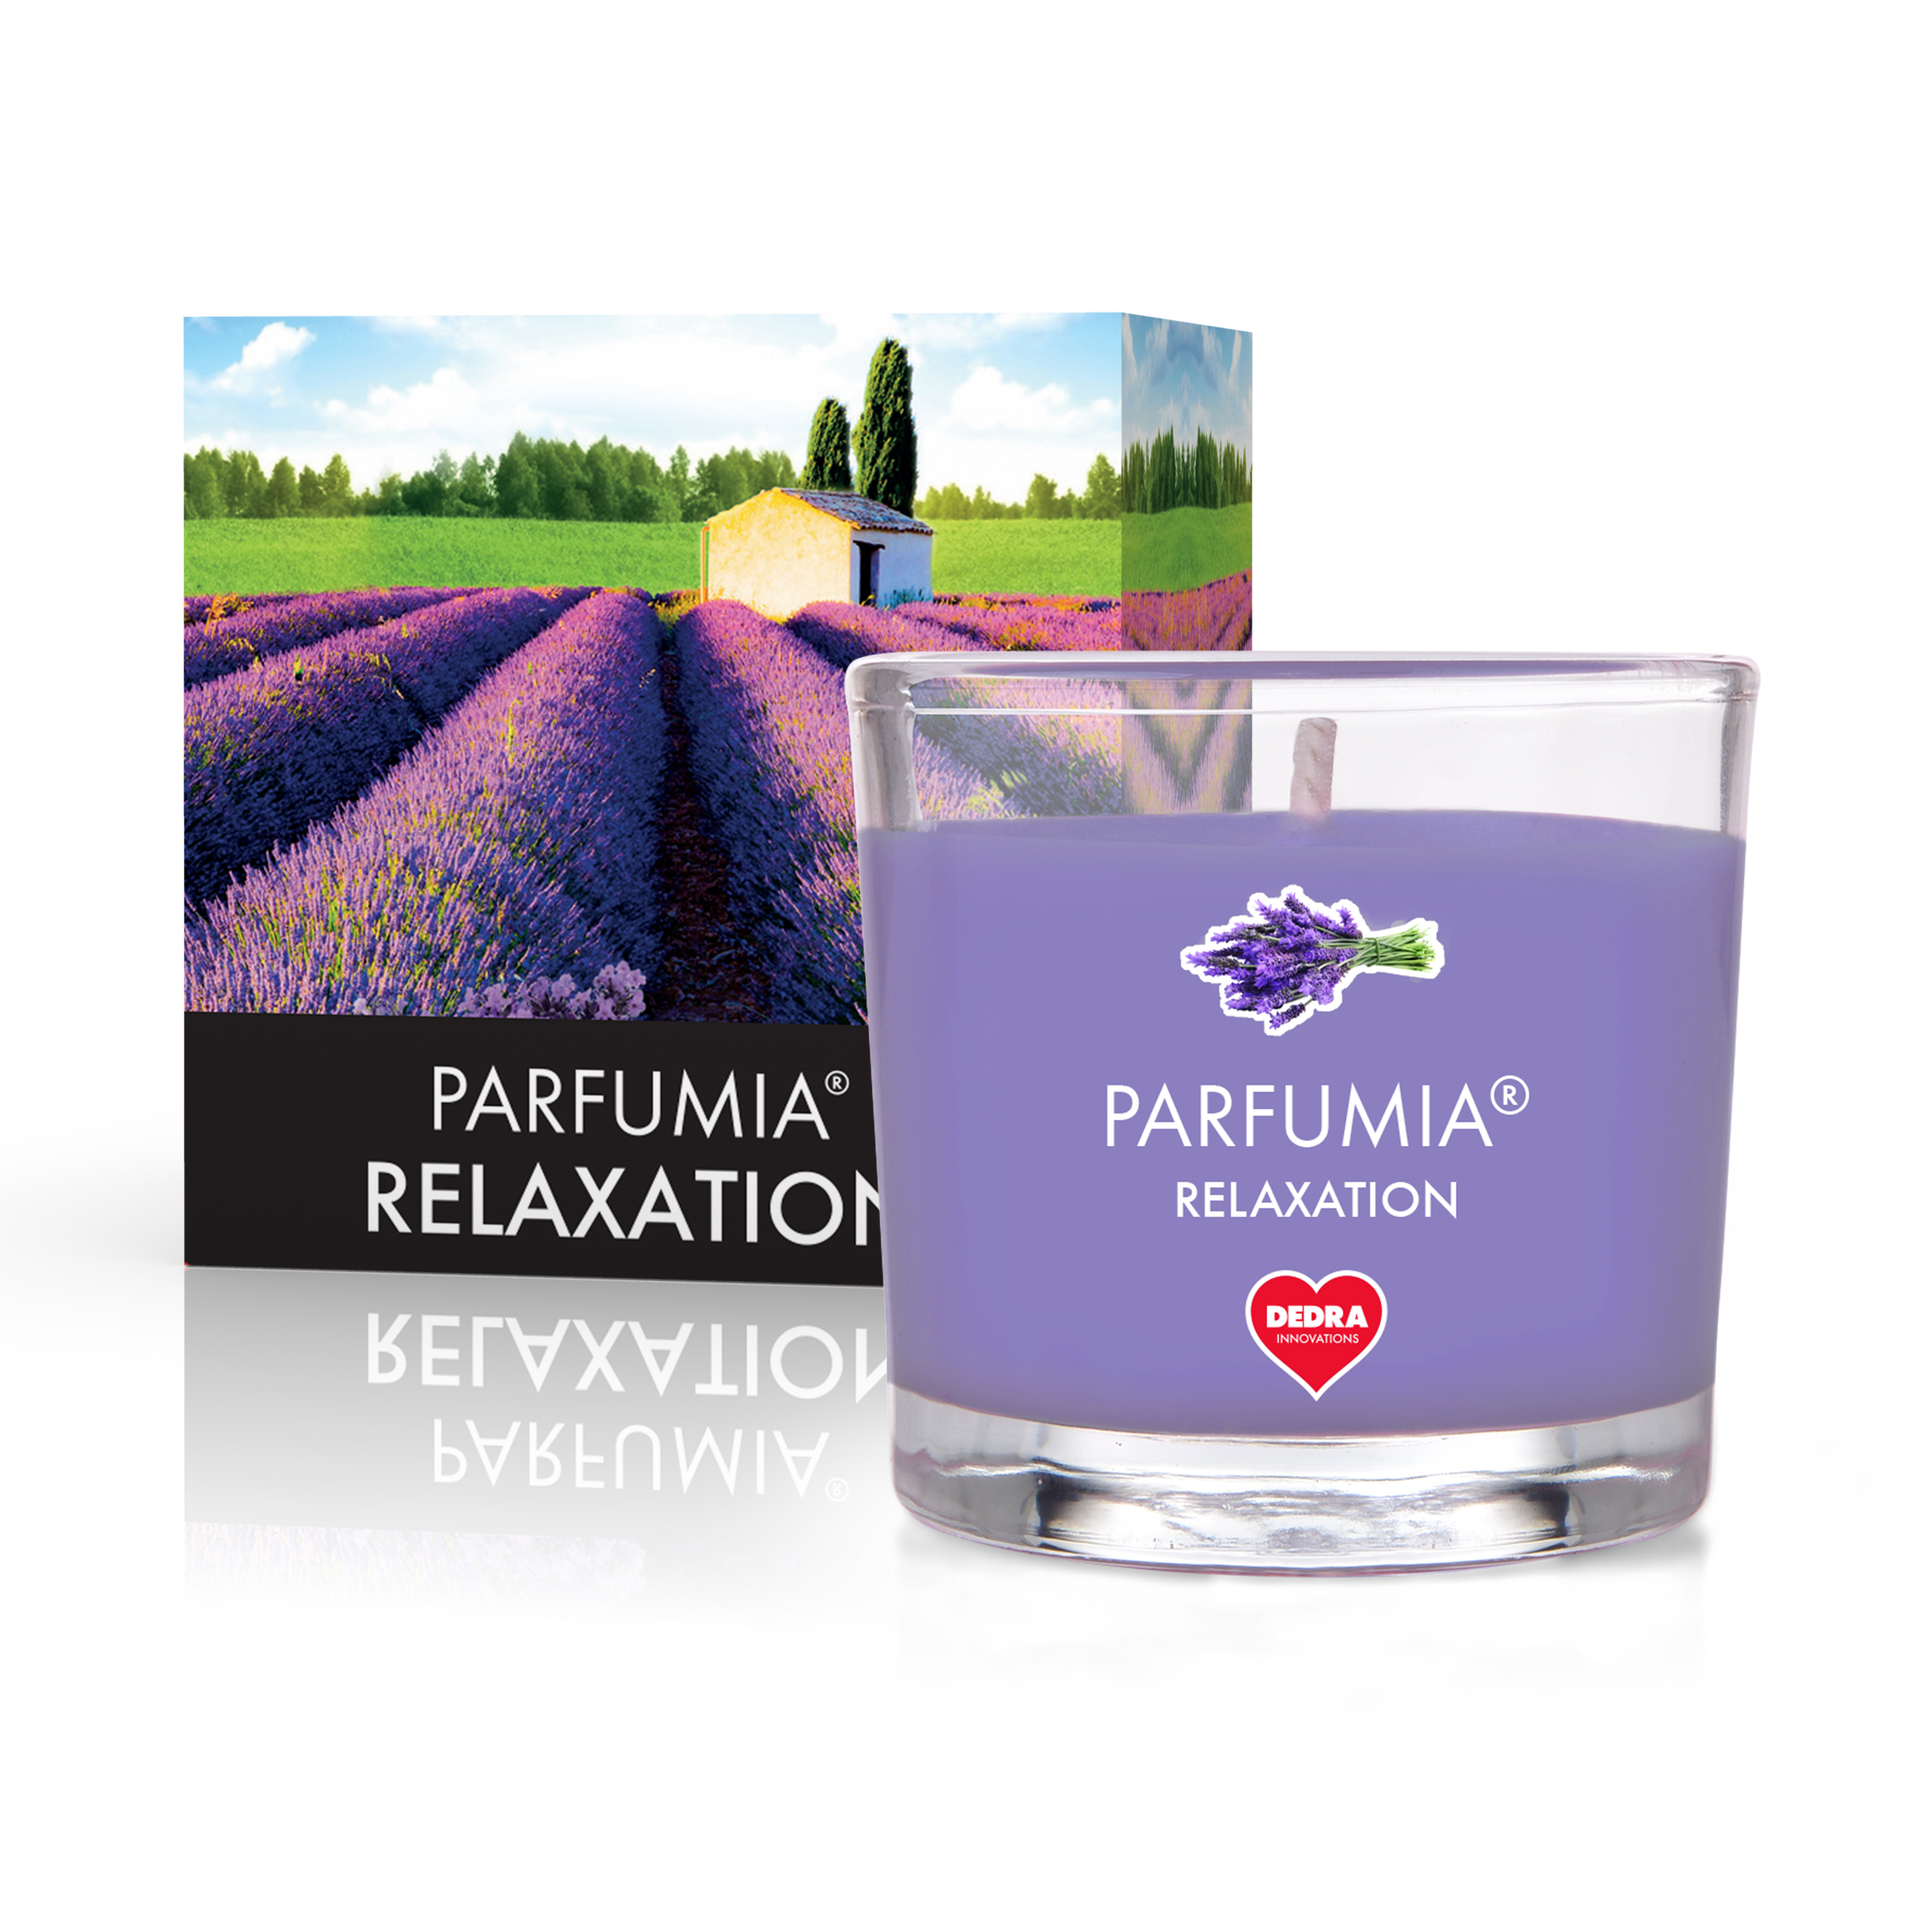 55 ml votivní sójová eko-svíce, Relaxation Parfumia